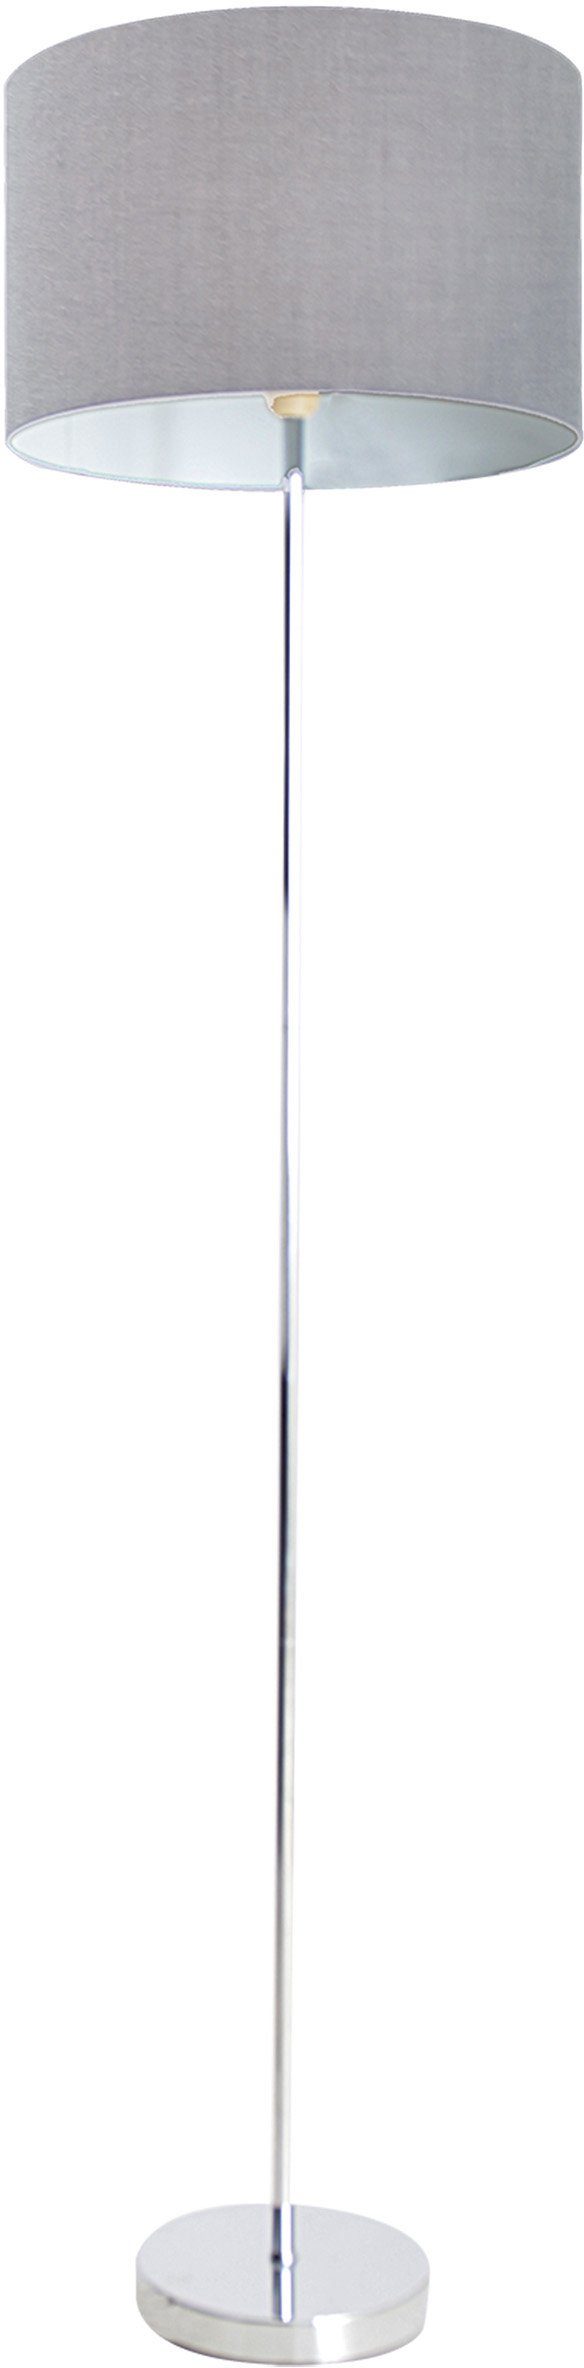 Durchmesser Stehlampe New 1x E27 40W Höhe 160cm 34,5cm näve Schirm Leuchtmittel, Gestell ohne max chrom York, grau